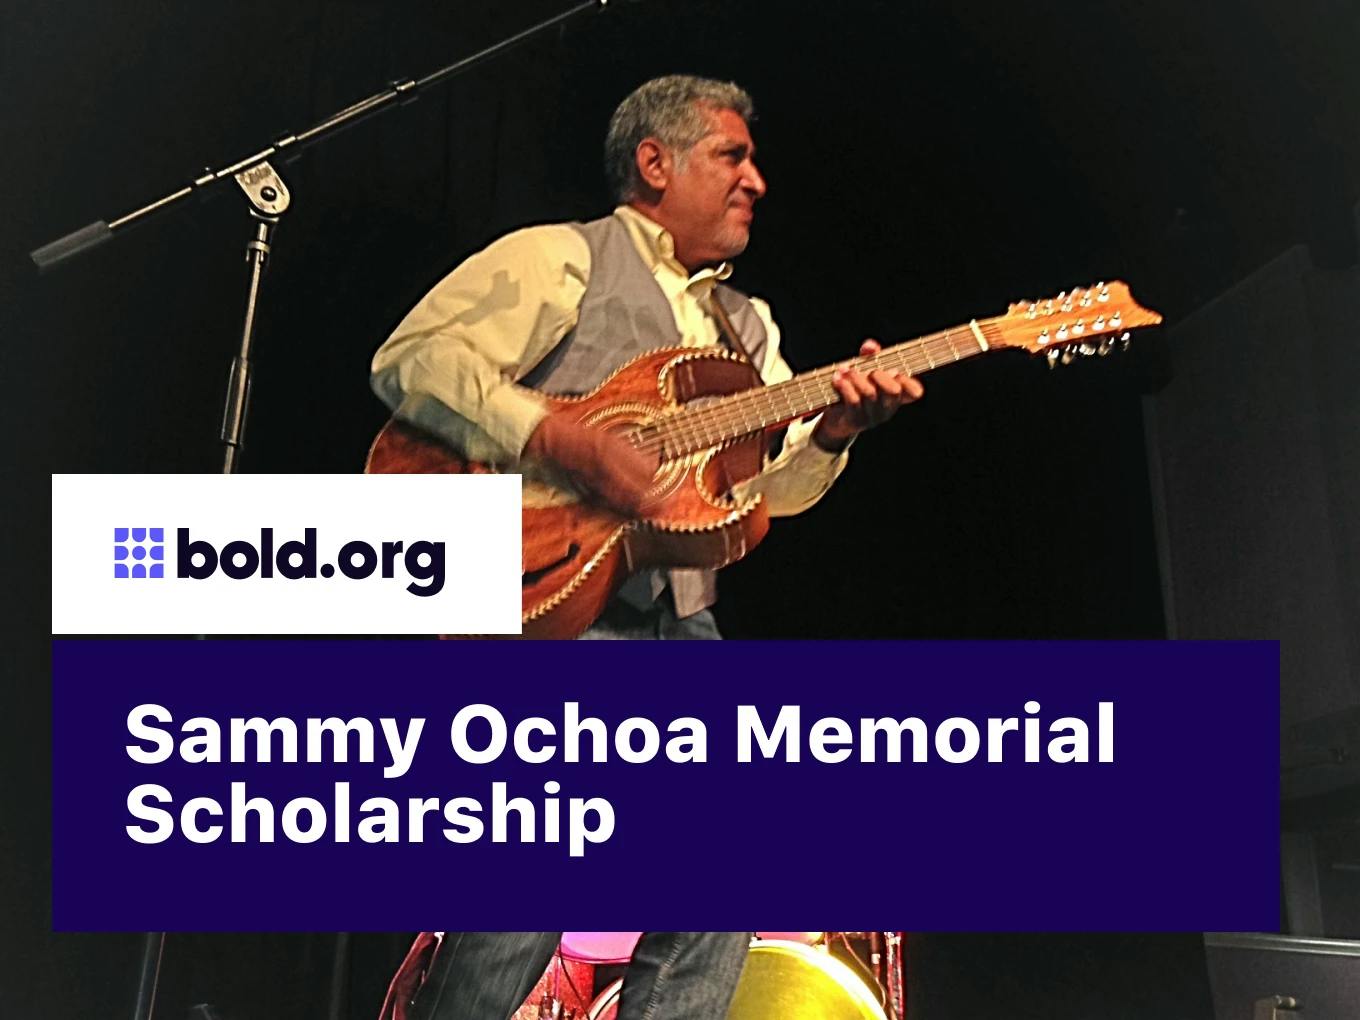 Sammy Ochoa Memorial Scholarship